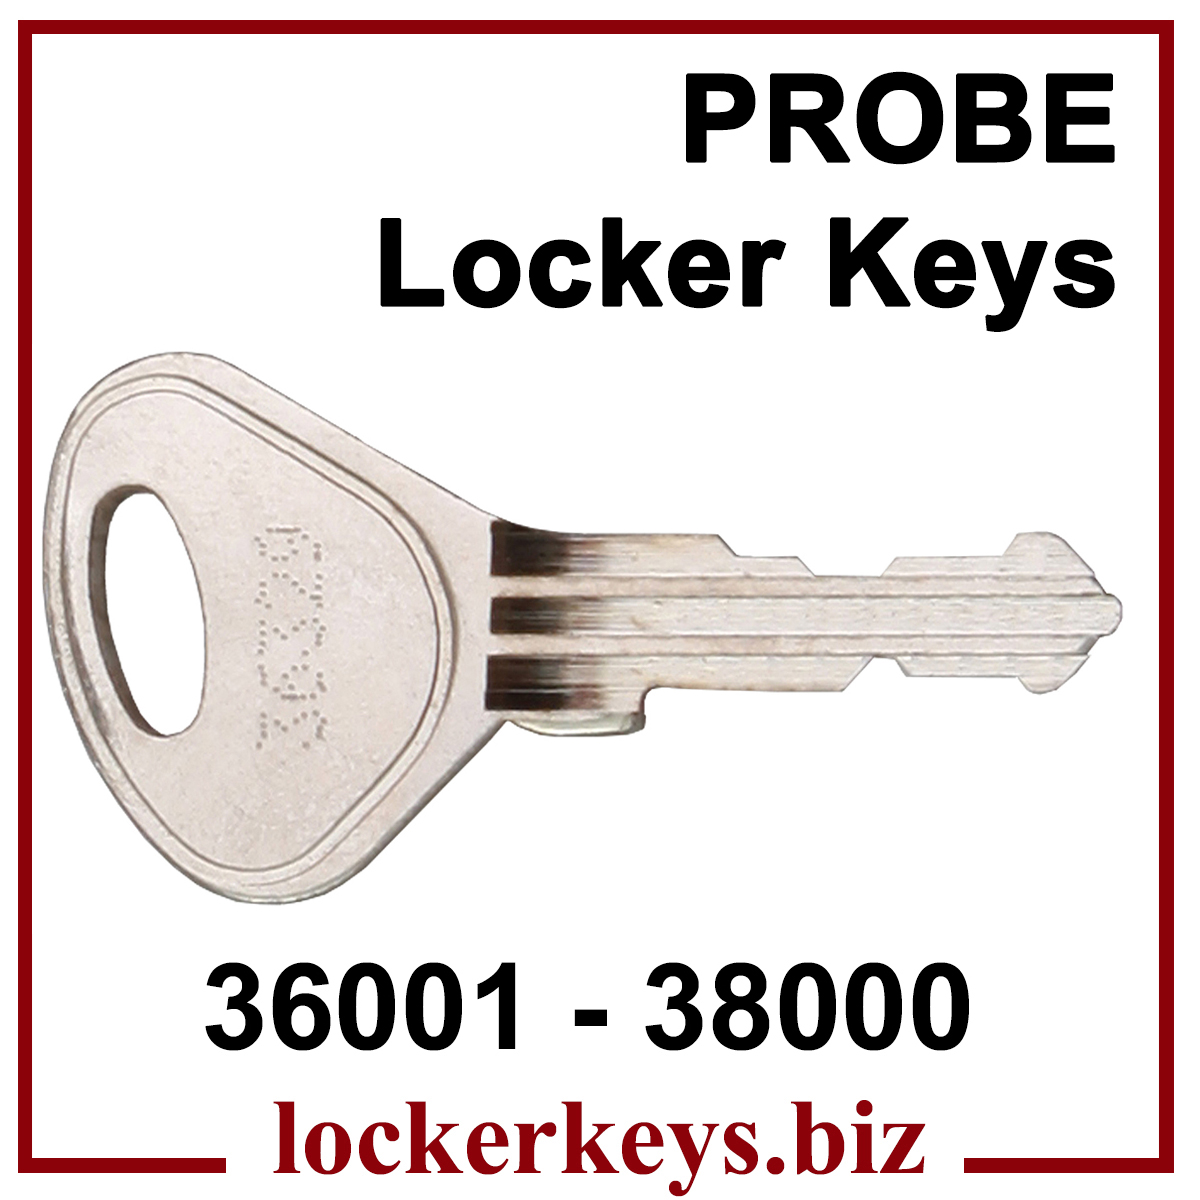 Probe Locker Keys cut to code